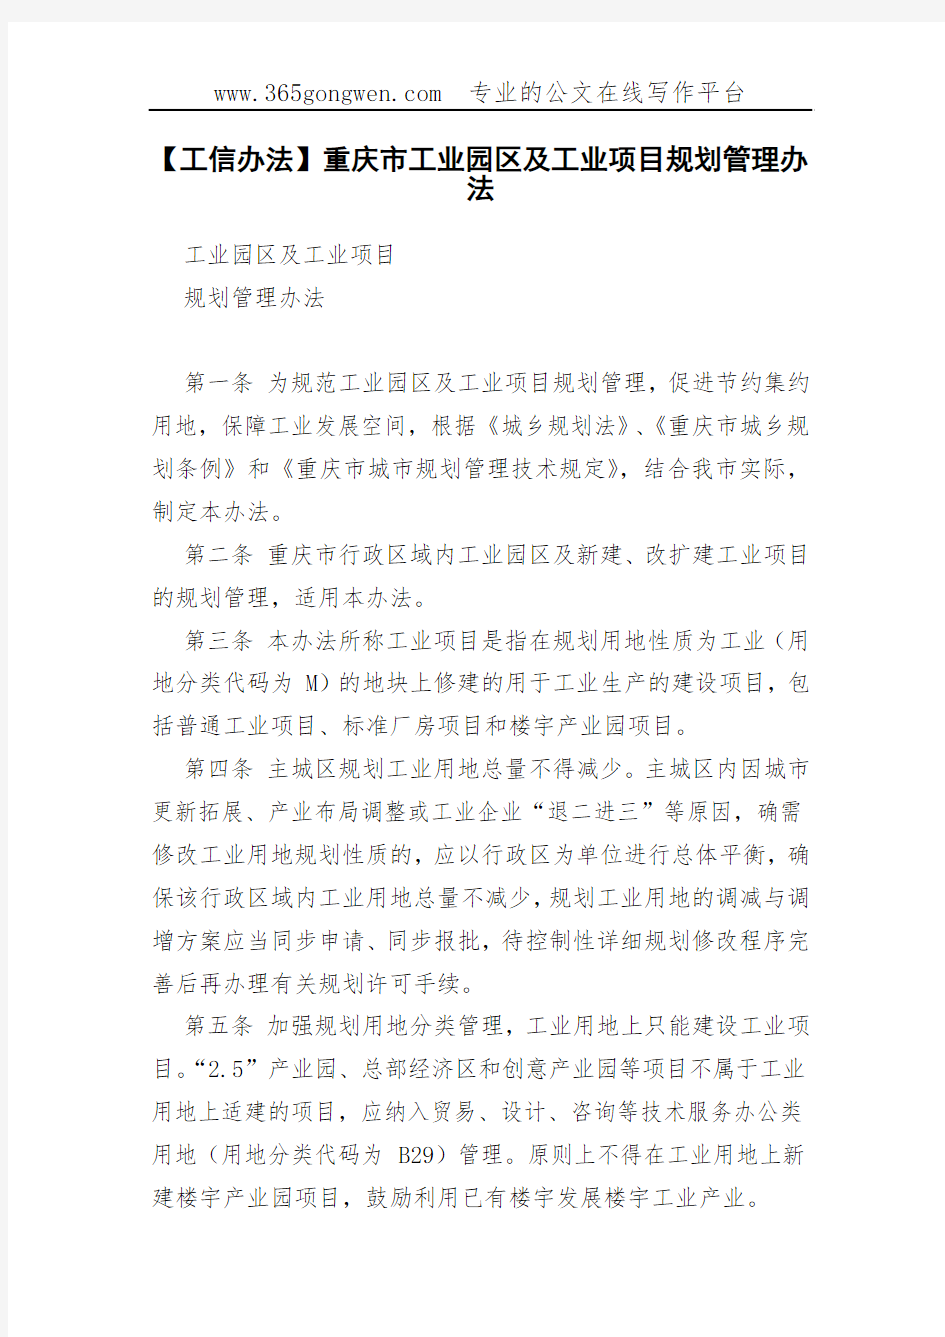 【工信办法】重庆市工业园区及工业项目规划管理办法(00002)